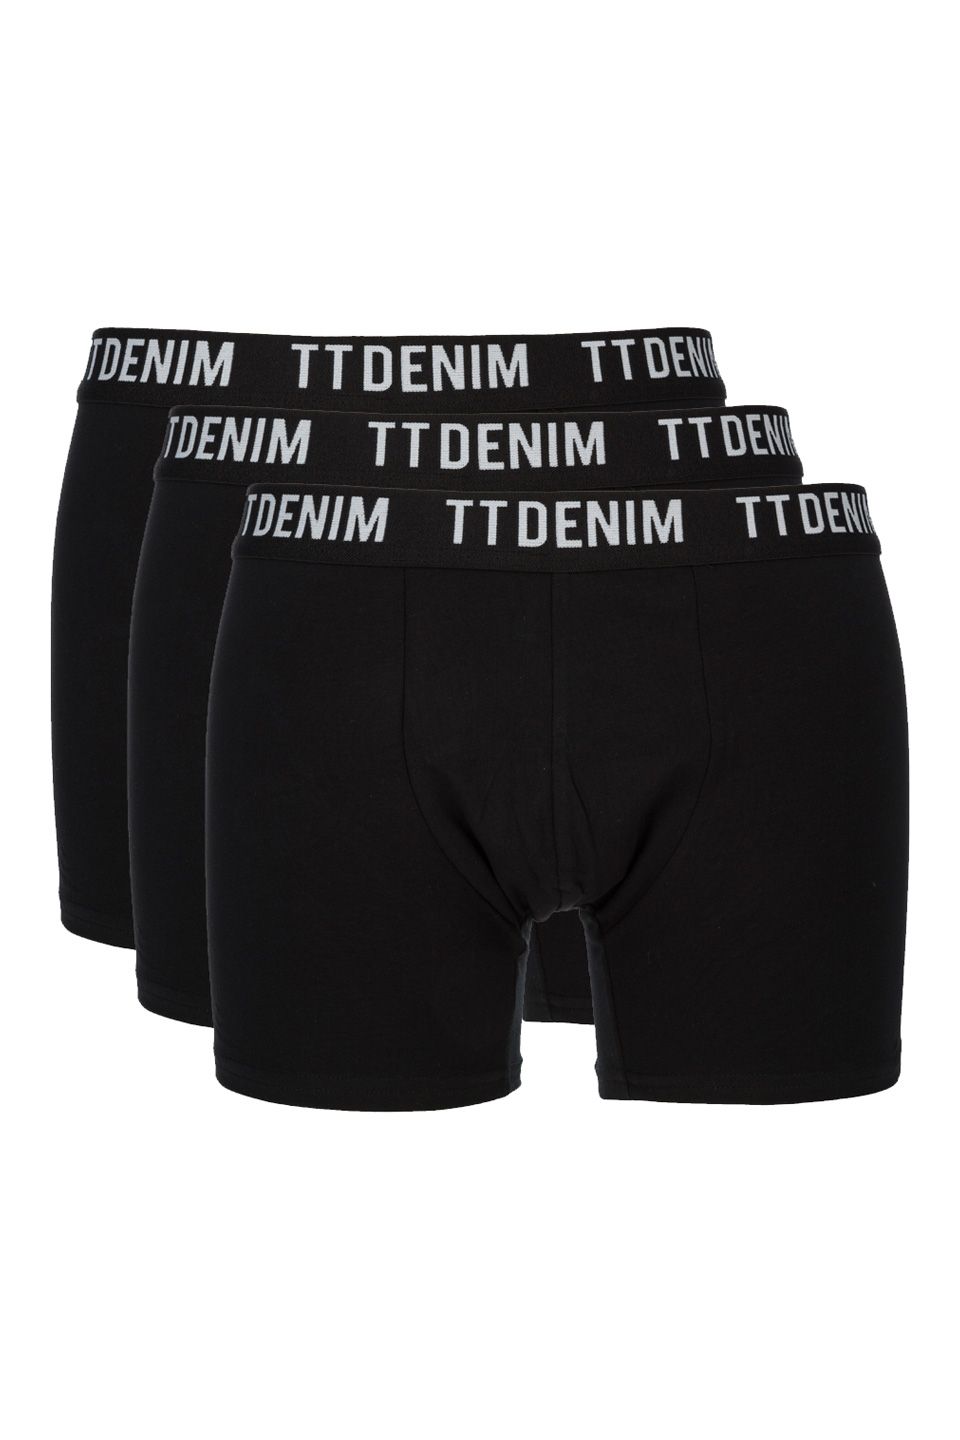 Комплект трусов мужских TOM TAILOR 1004002-29999 черных XL, купить в  Москве, цены в интернет-магазинах на Мегамаркет